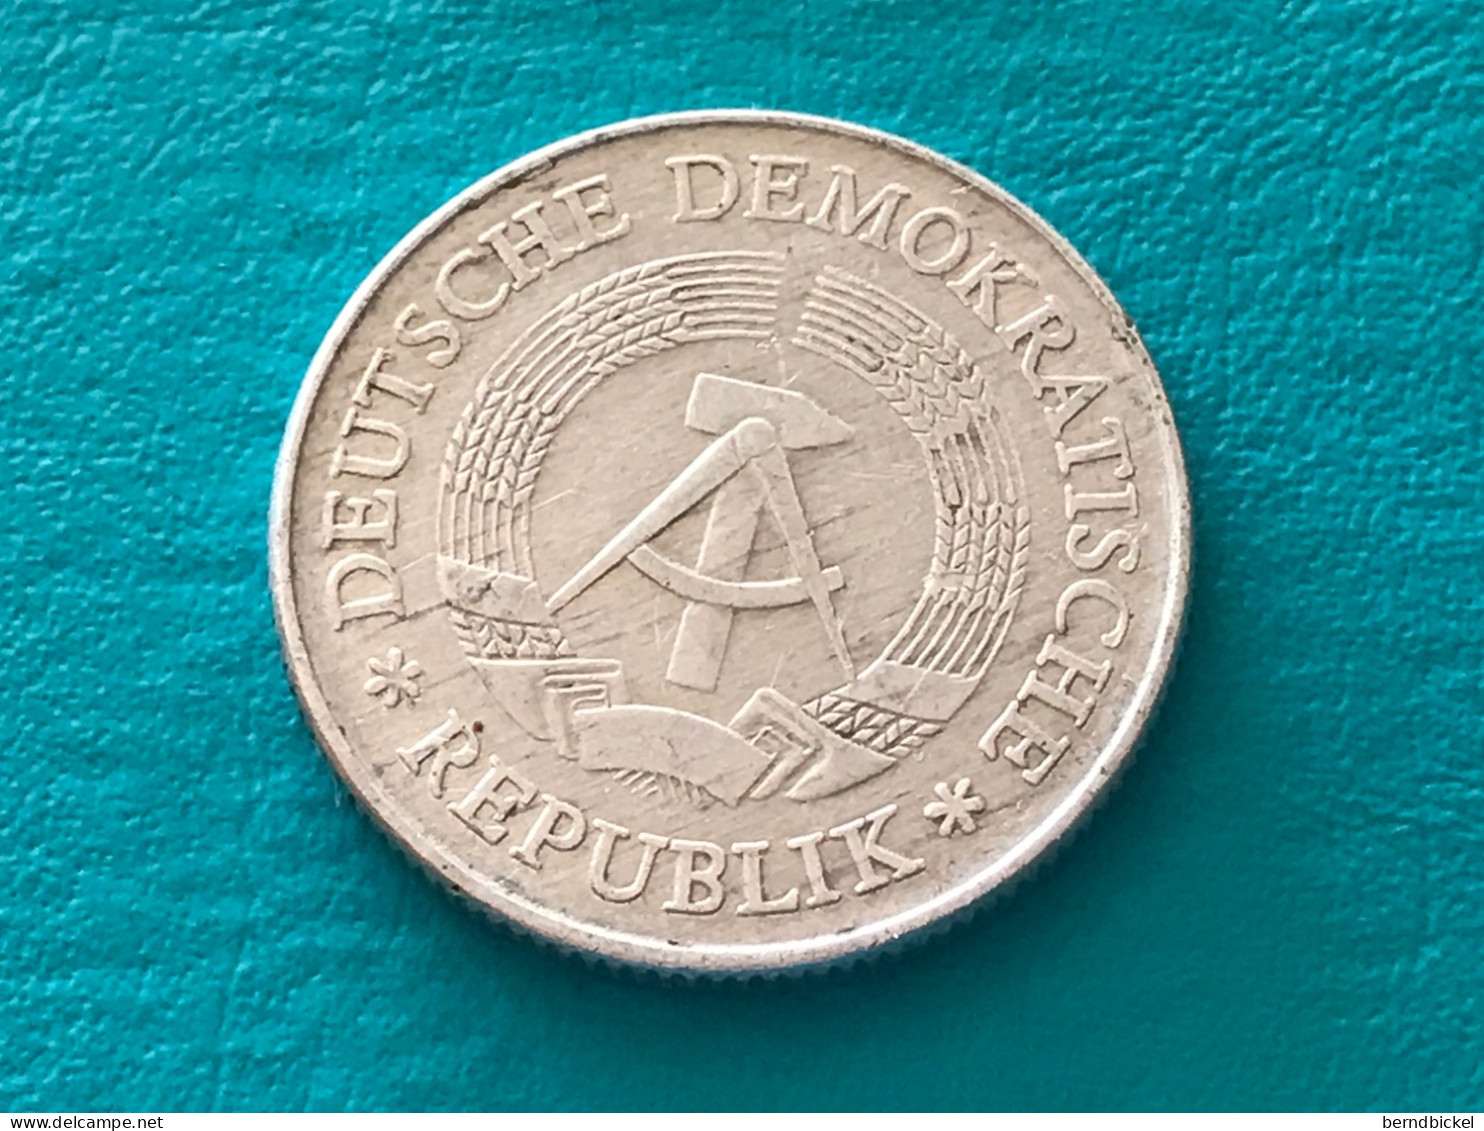 Münze Münzen Umlaufmünze Deutschland DDR 2 Mark 1978 - 2 Mark